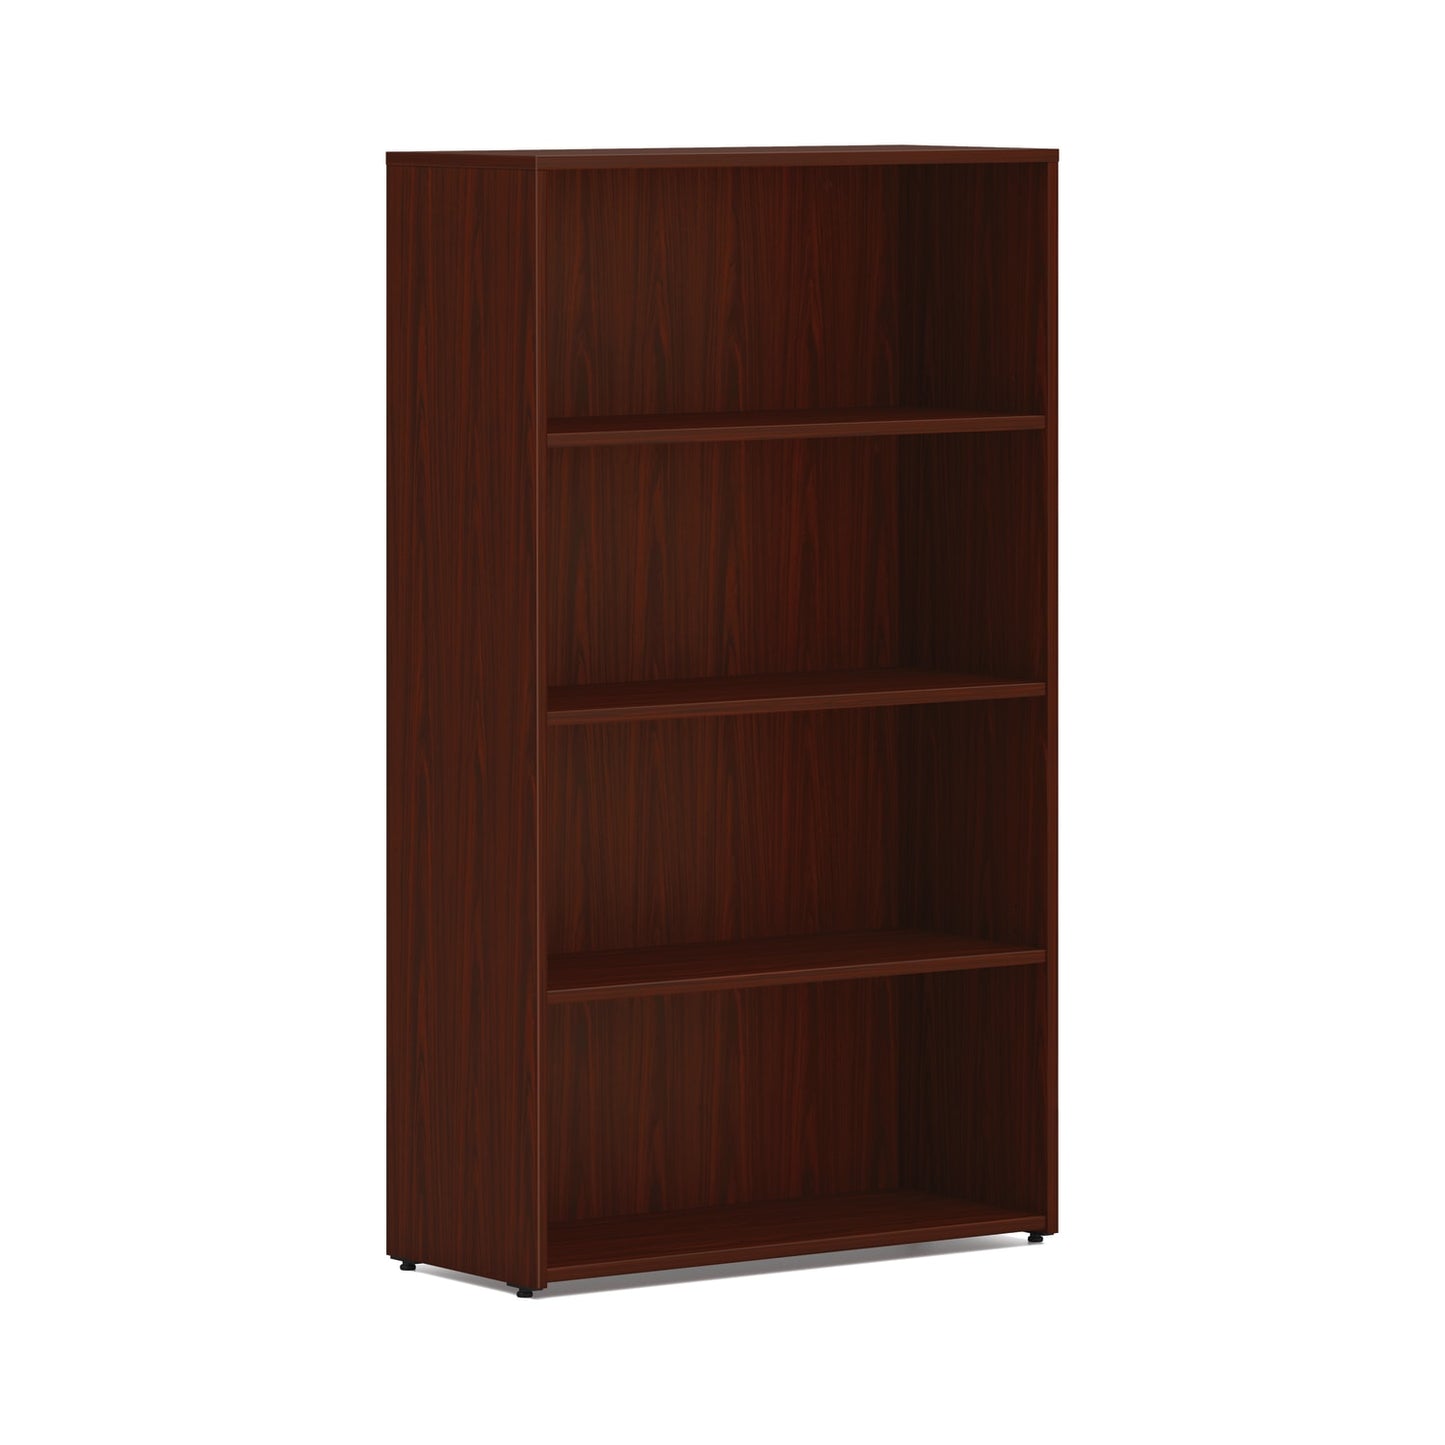 HON Mod Bookcase | 4 Shelves | 30"W | Traditional Mahogany Finish